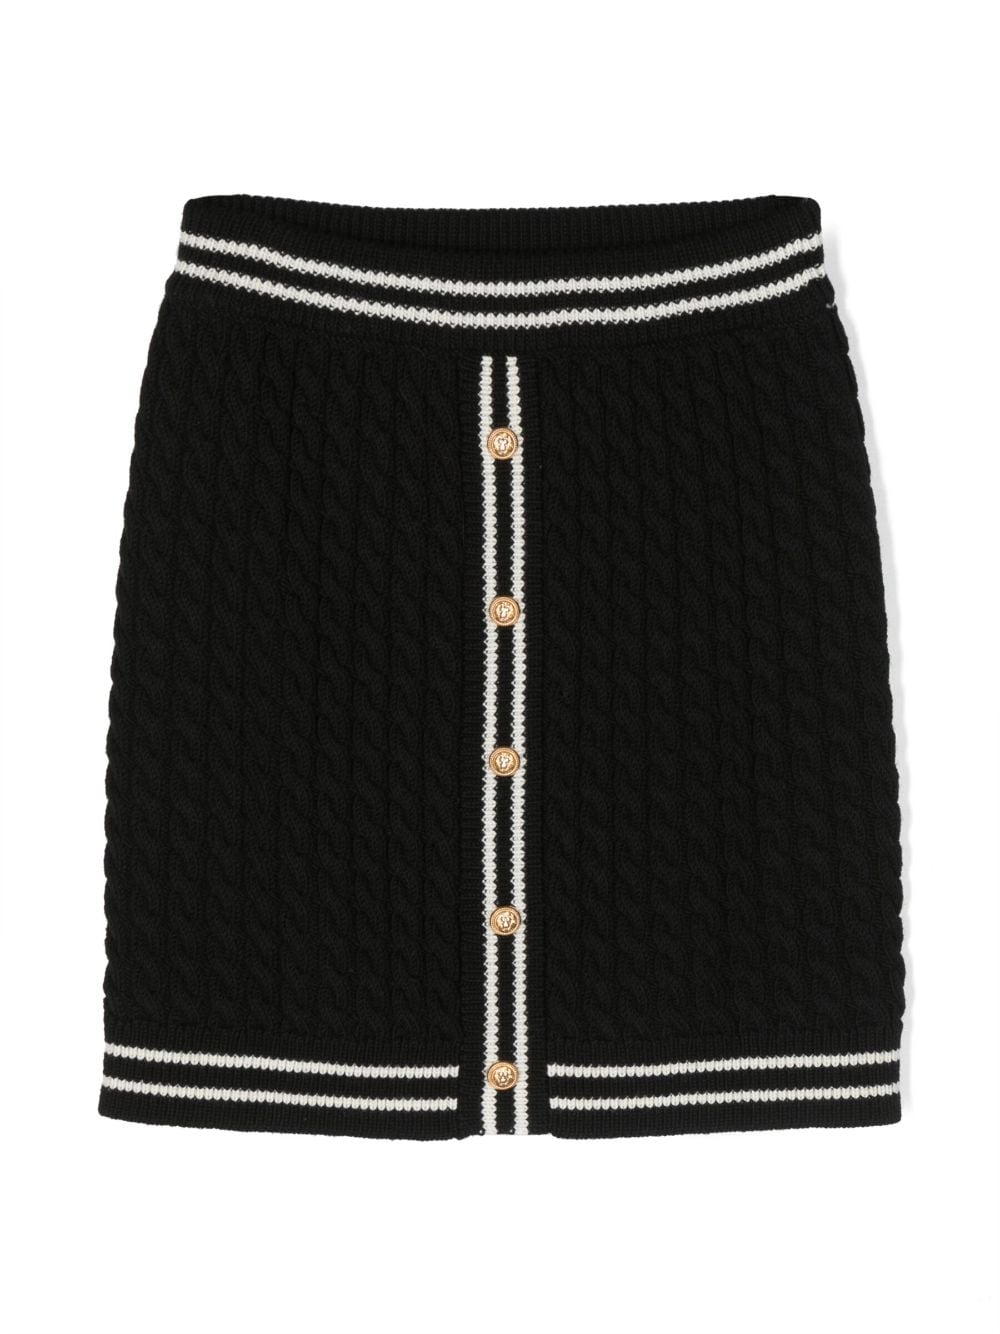 Black wool skirt for girls